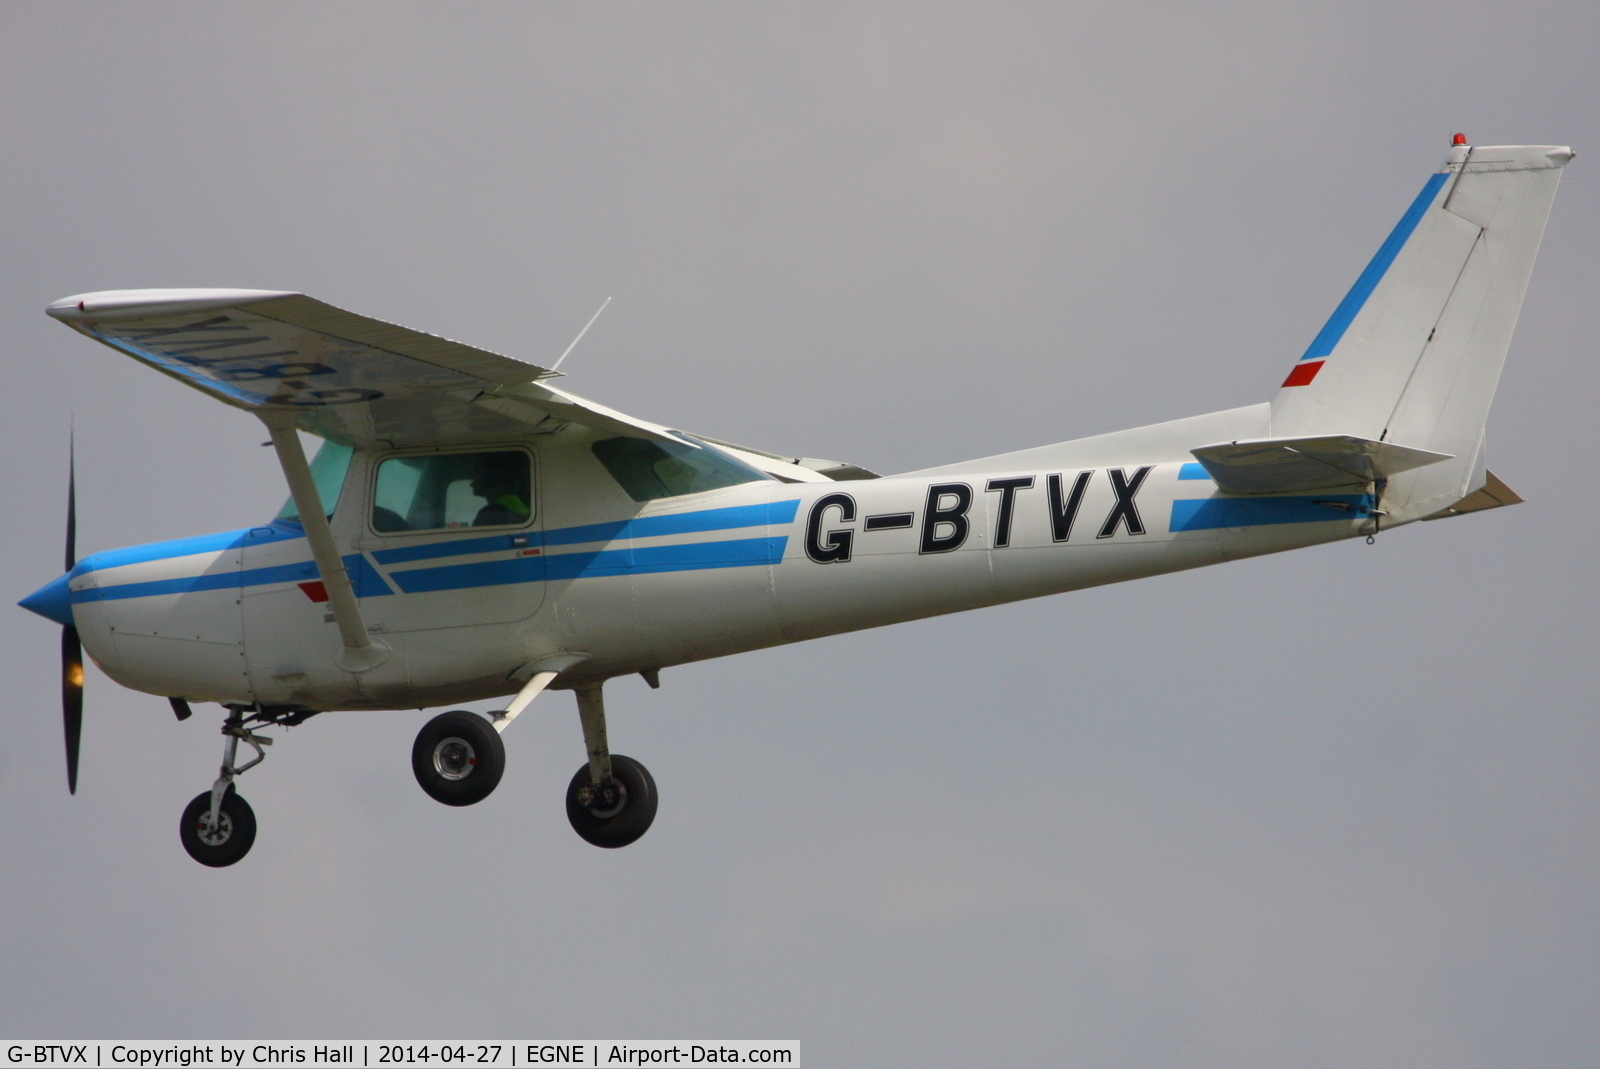 G-BTVX, 1979 Cessna 152 C/N 152-83375, Flight Centre 2010 Ltd